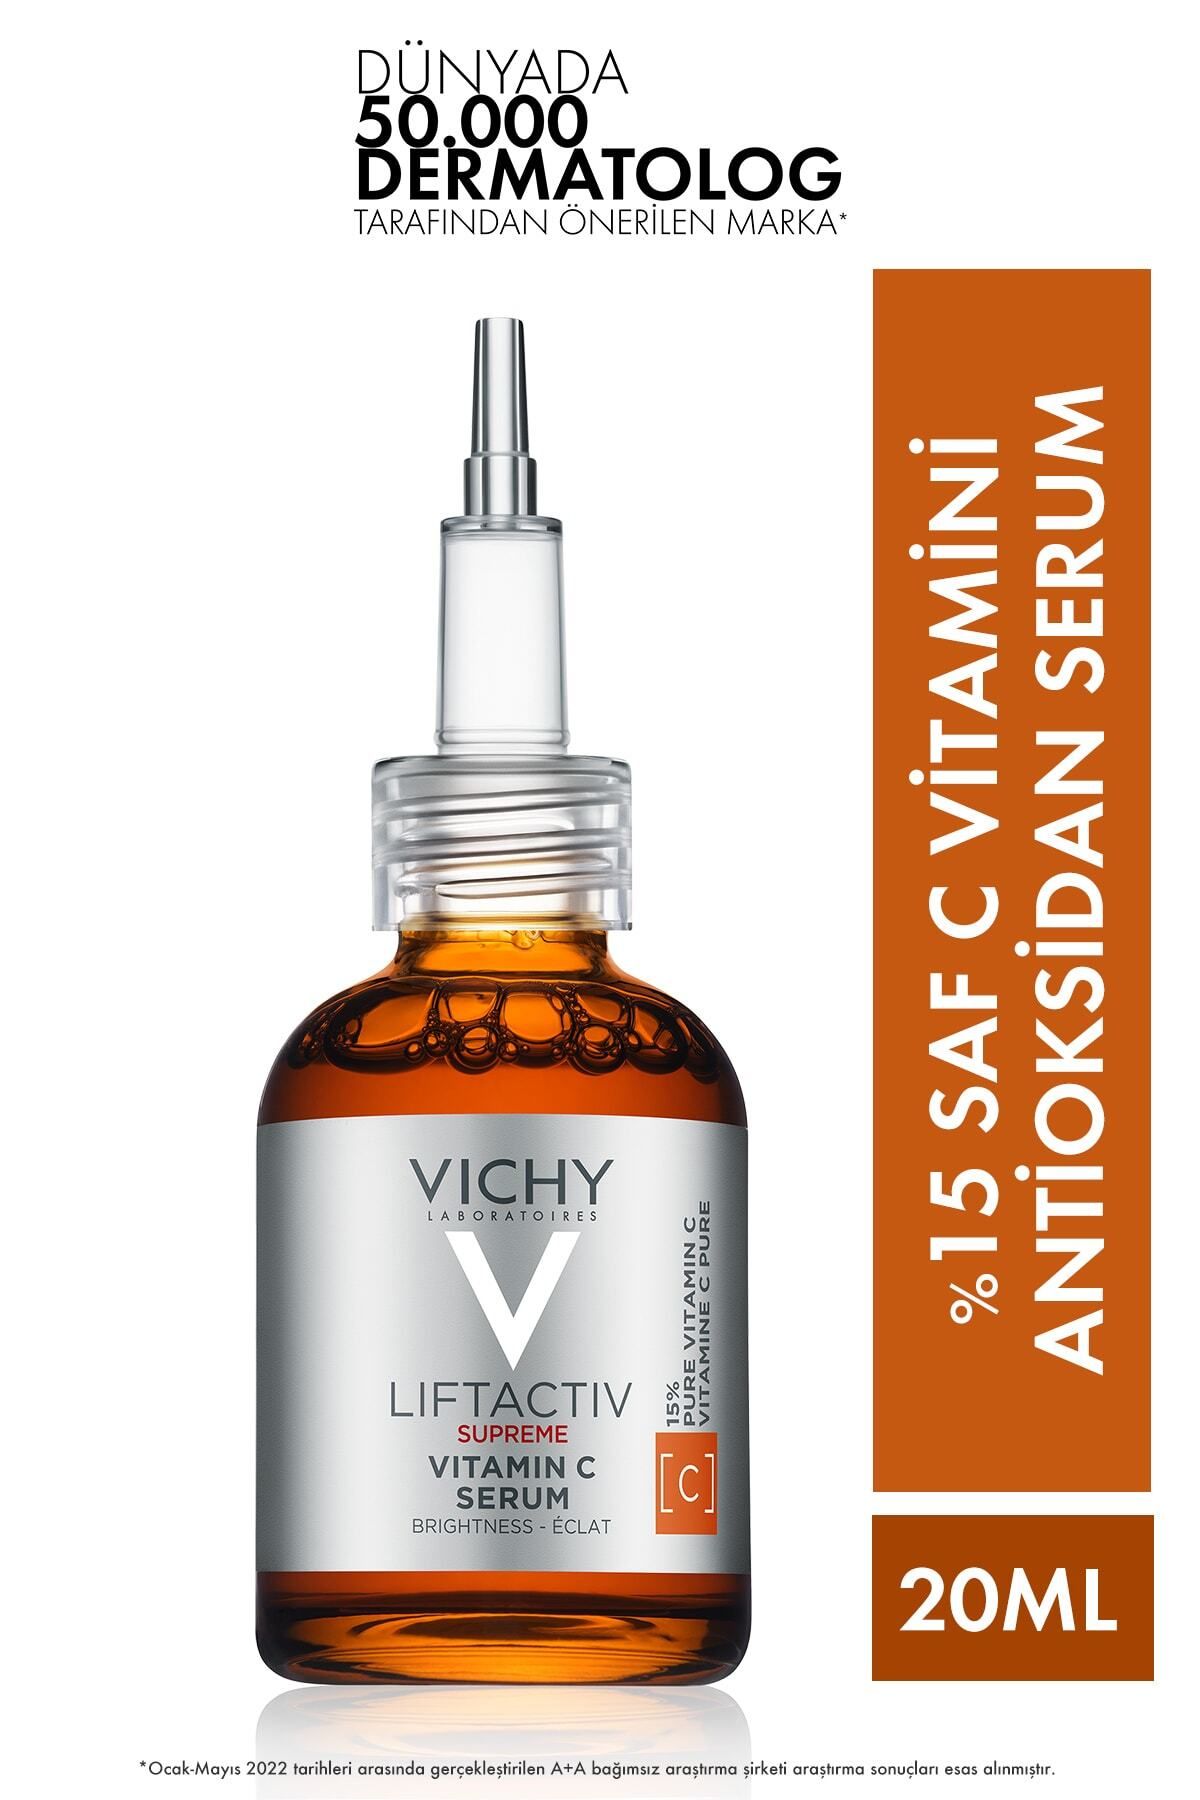 Vichy Liftactiv Supreme %15 Saf C Vitamini Içeren Aydınlatıcı Serum 20ml